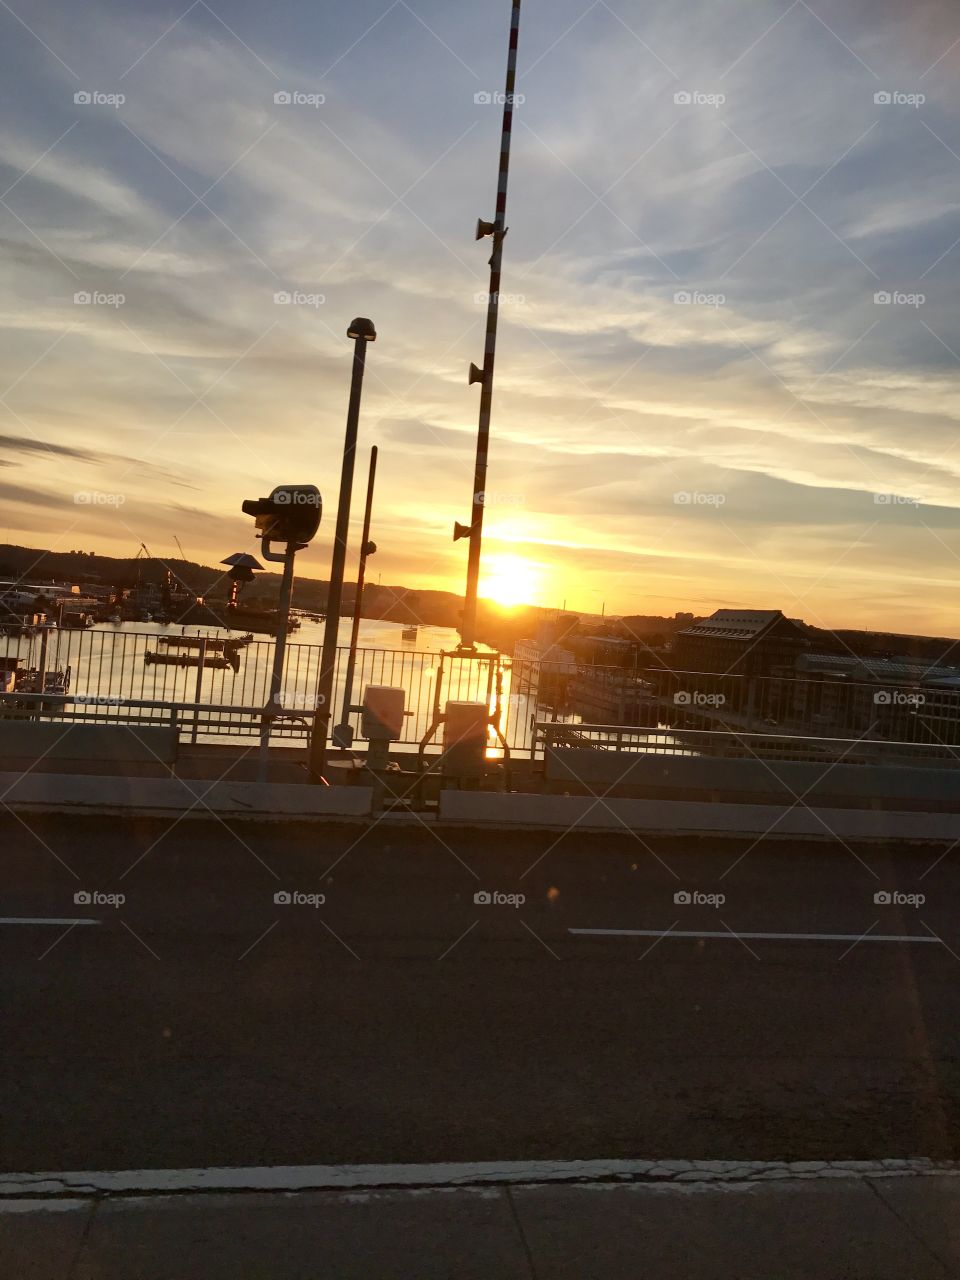 A photo taken from a bridge in Gothenburg Sweden.